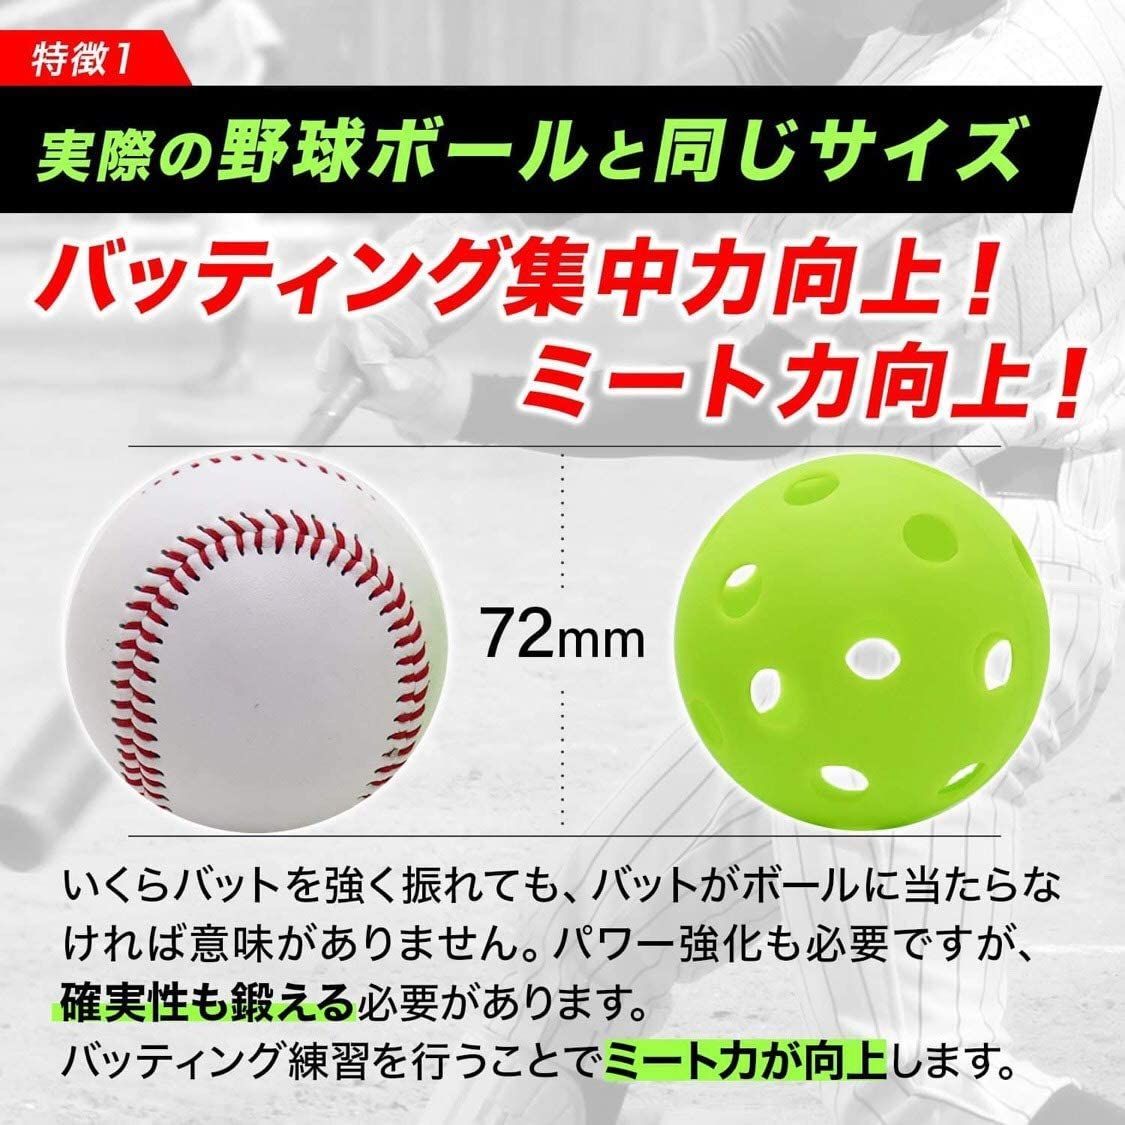 穴あきボール 野球 バッティング練習 72mm 緑 トレーニング ボール 10